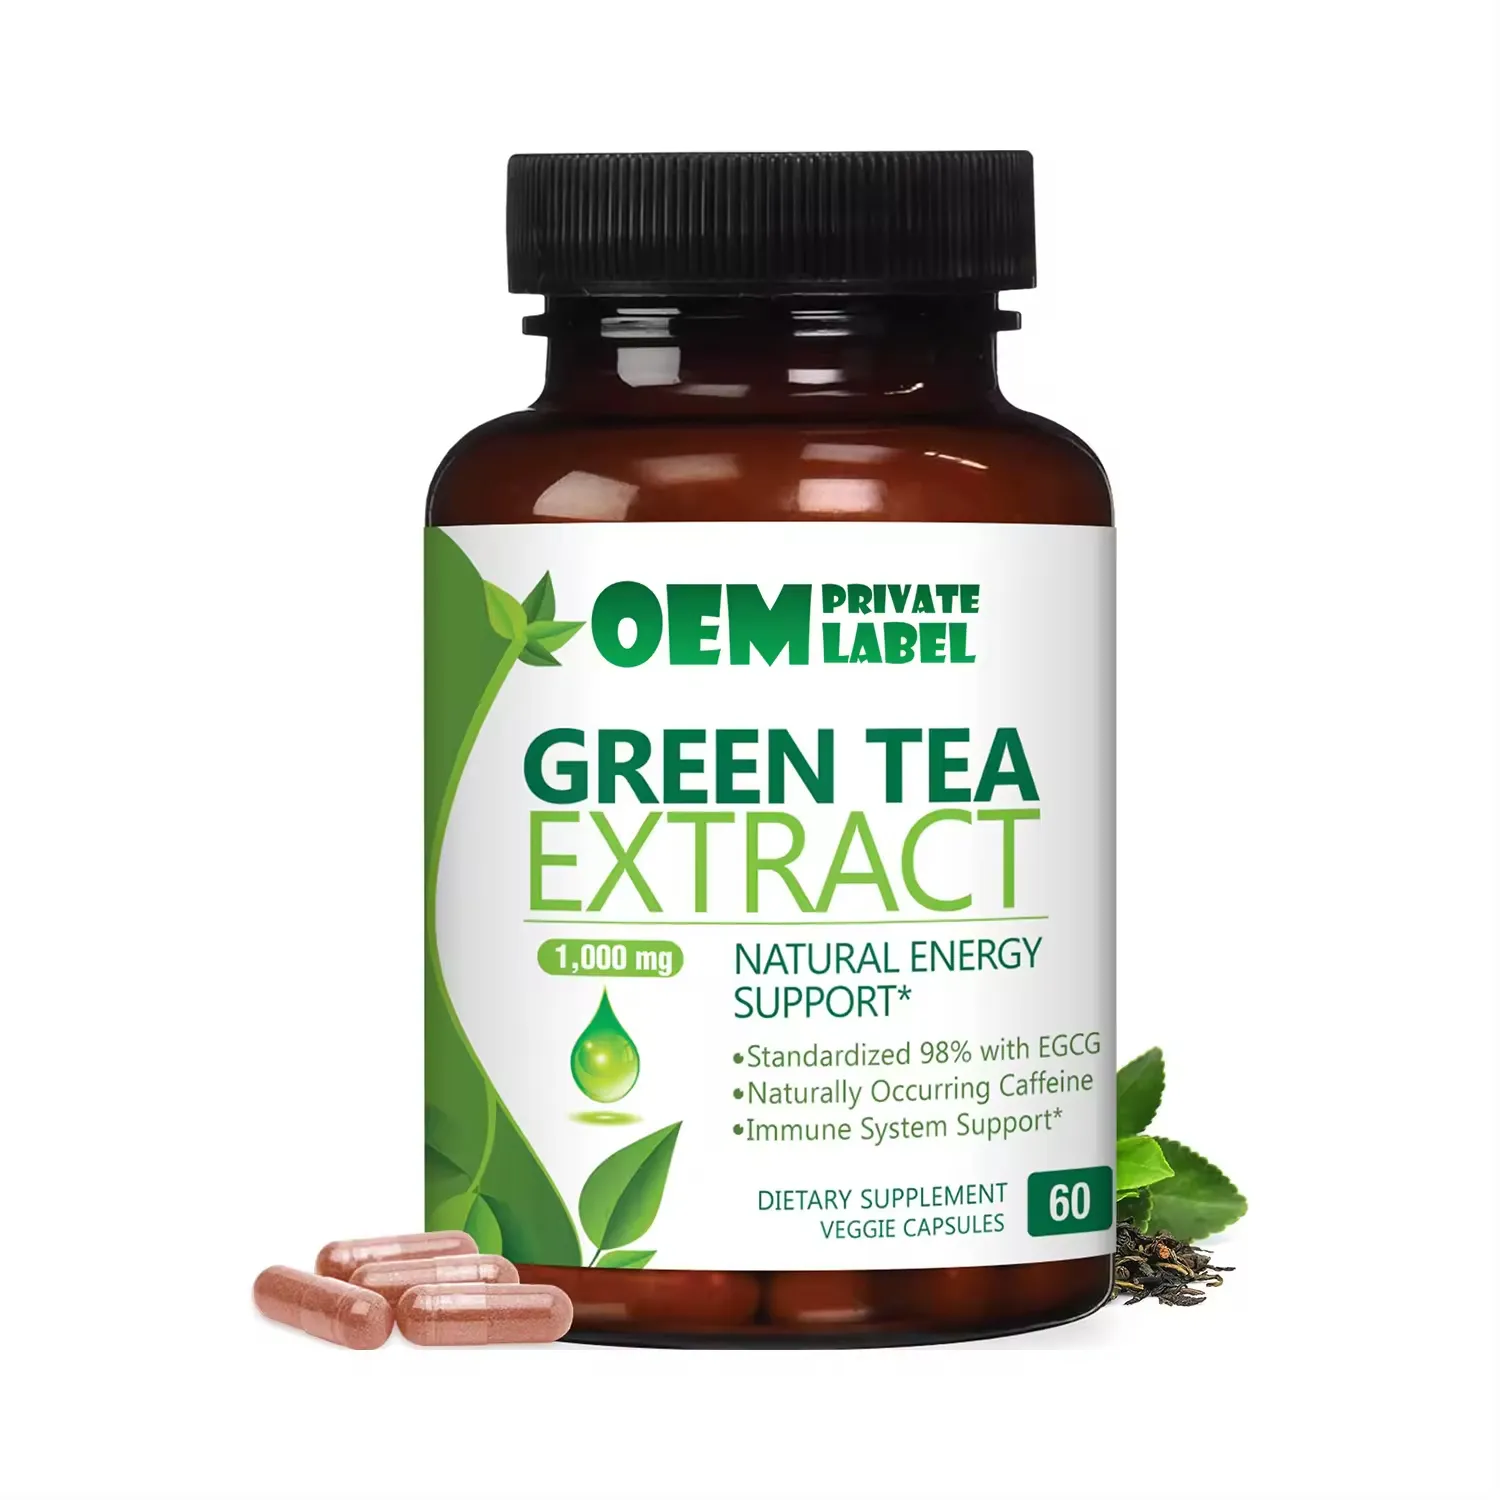 Oem Label pribadi suplemen kesehatan Herbal kapsul Pelangsing teh hijau mendukung hati dan antioksidan kapsul teh hijau Kesehatan